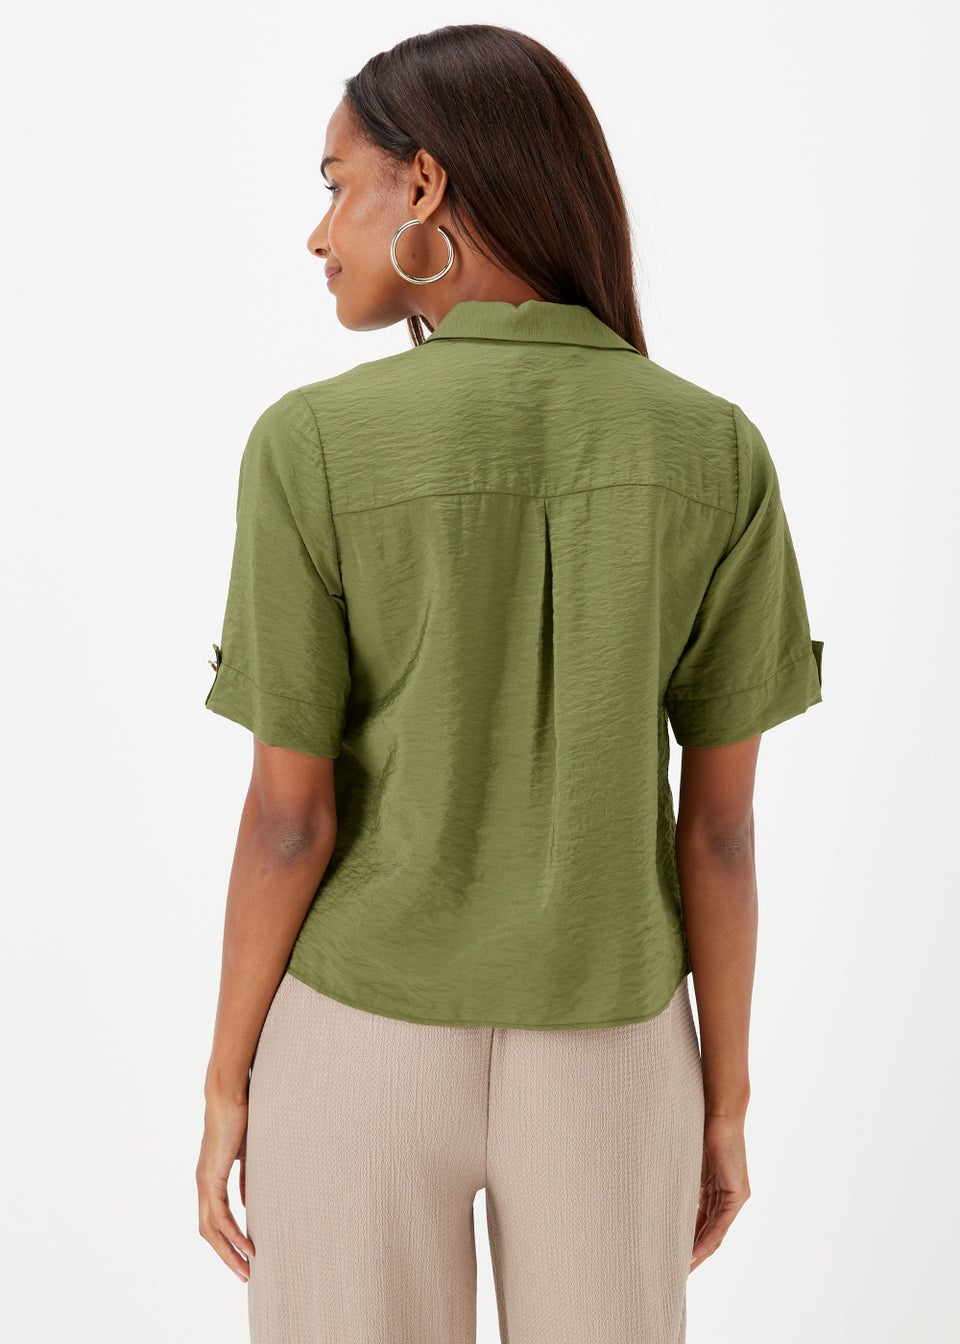 Khaki Short Sleeve Utility Shirt - Matalan